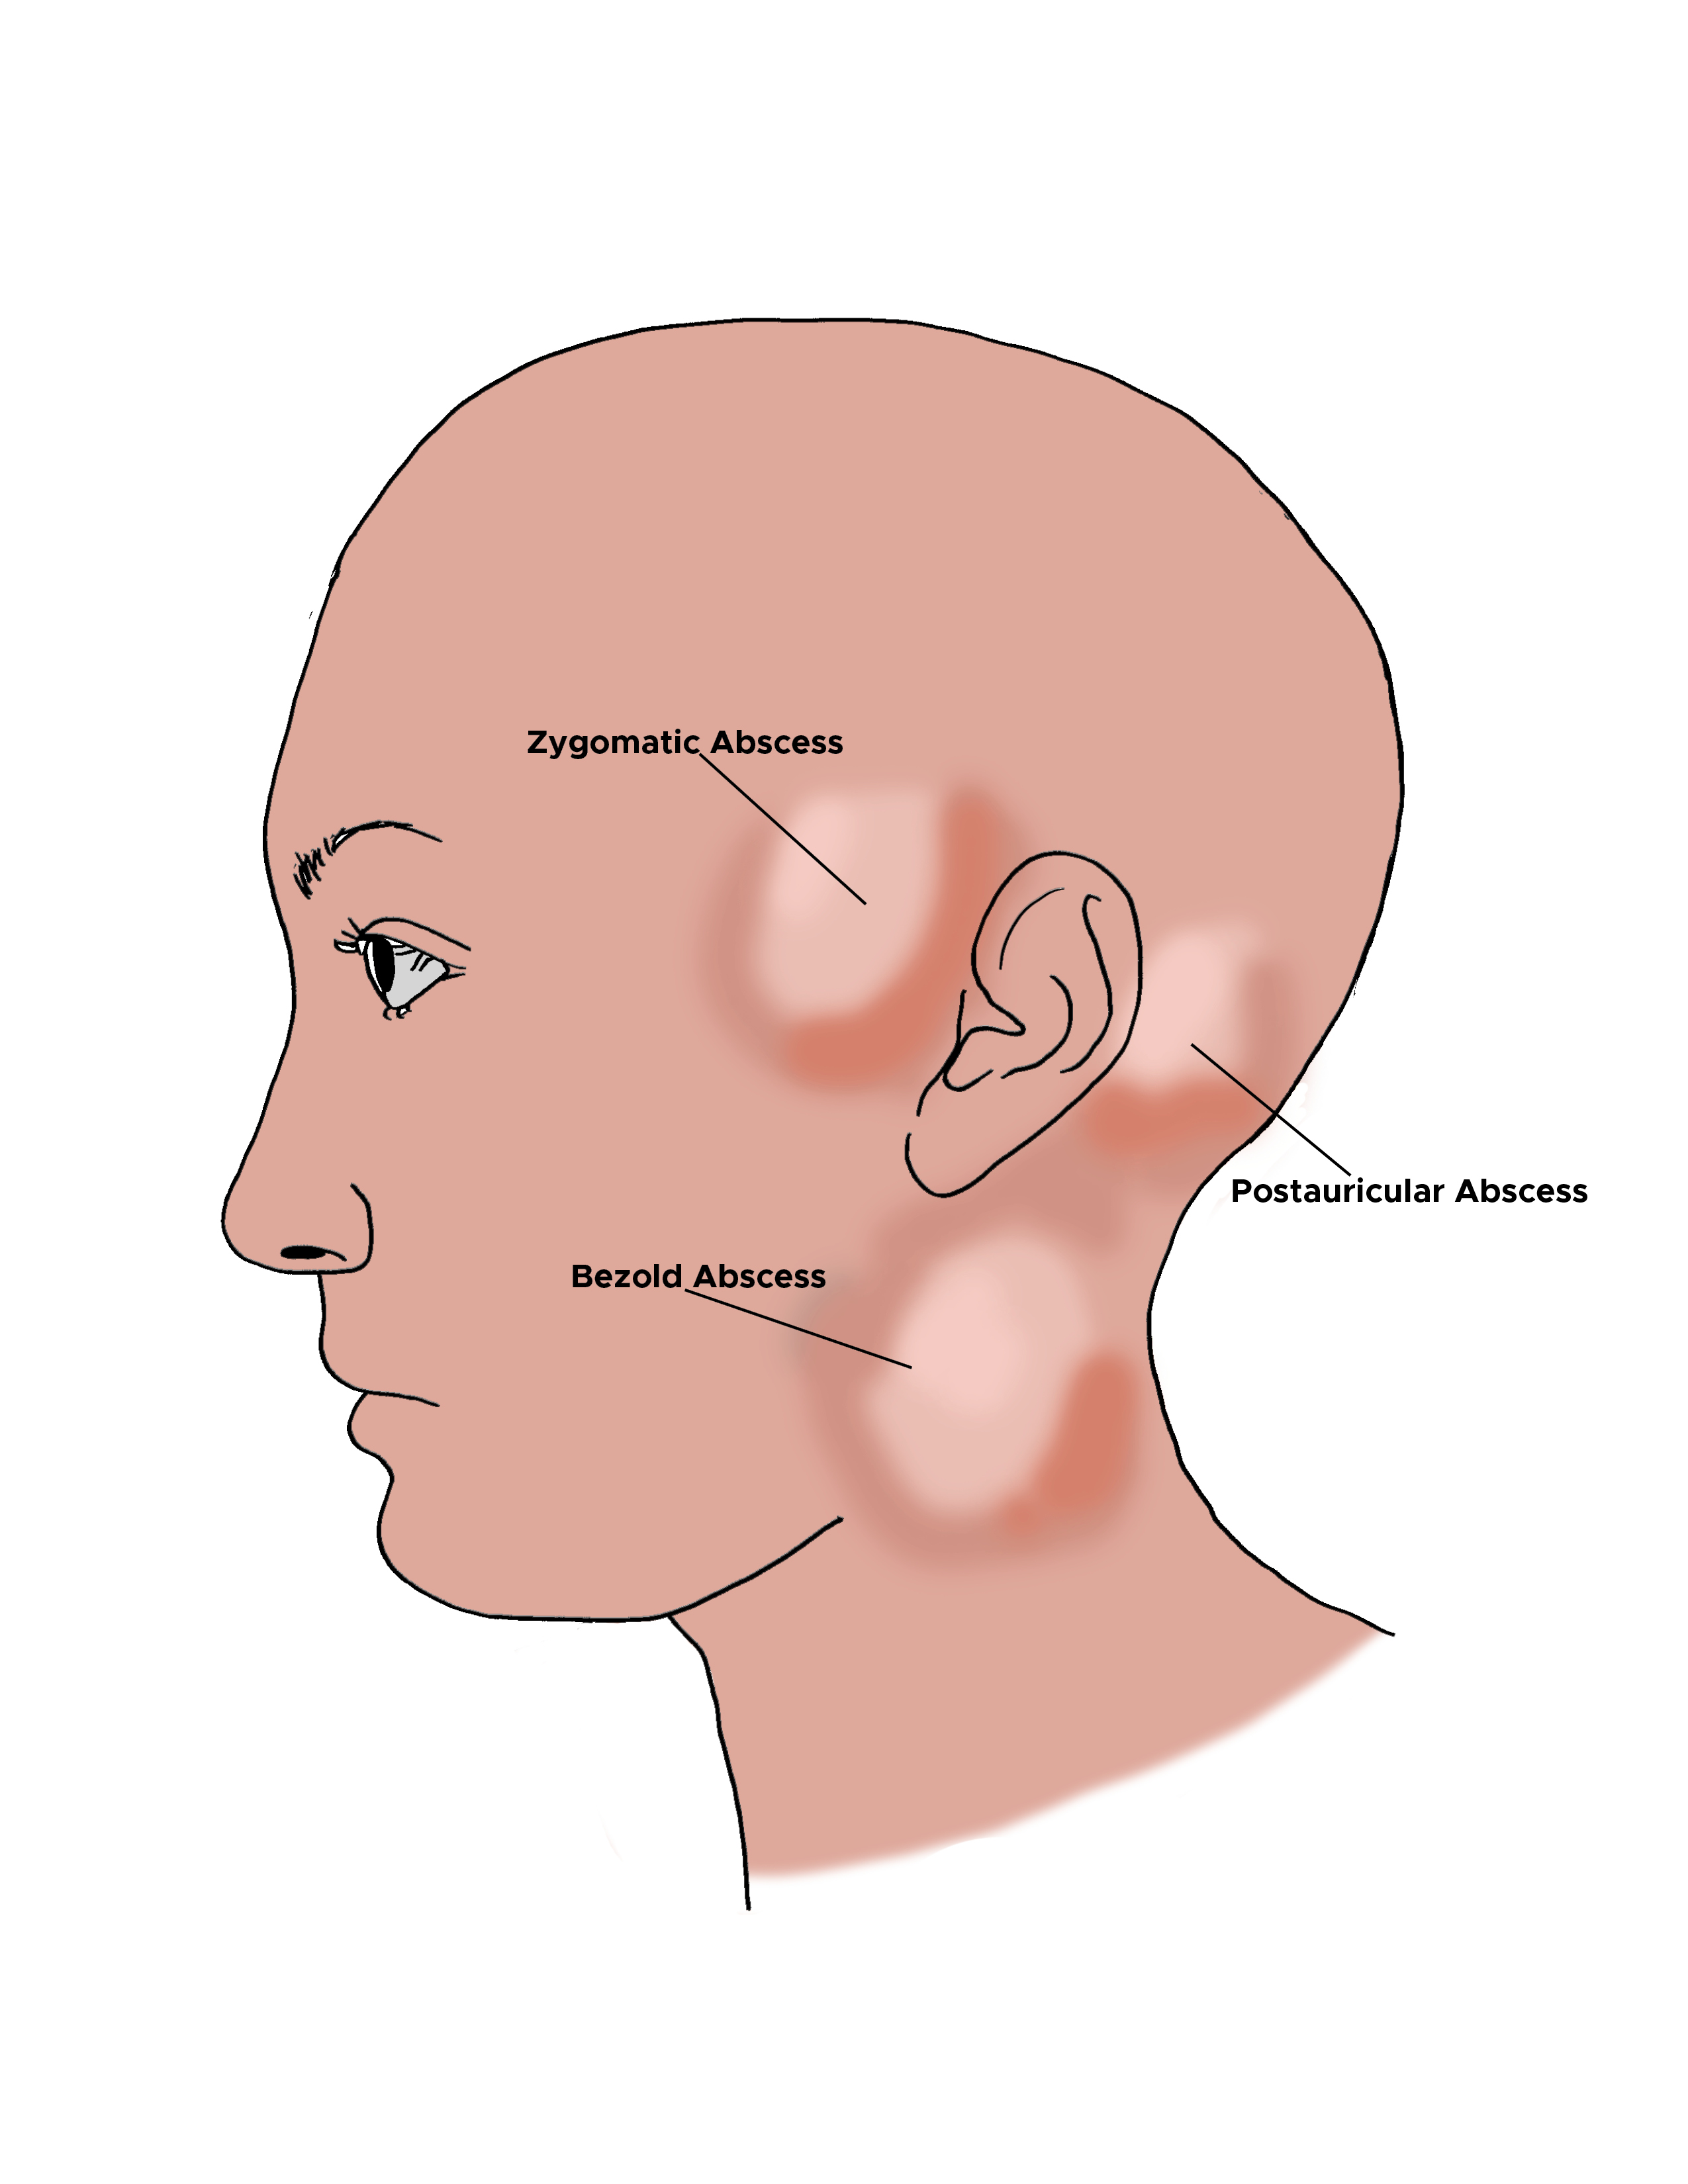 Illustration of abscesses on side of head. Zygomatic abscess, postauricular abscess, bezold abscess.